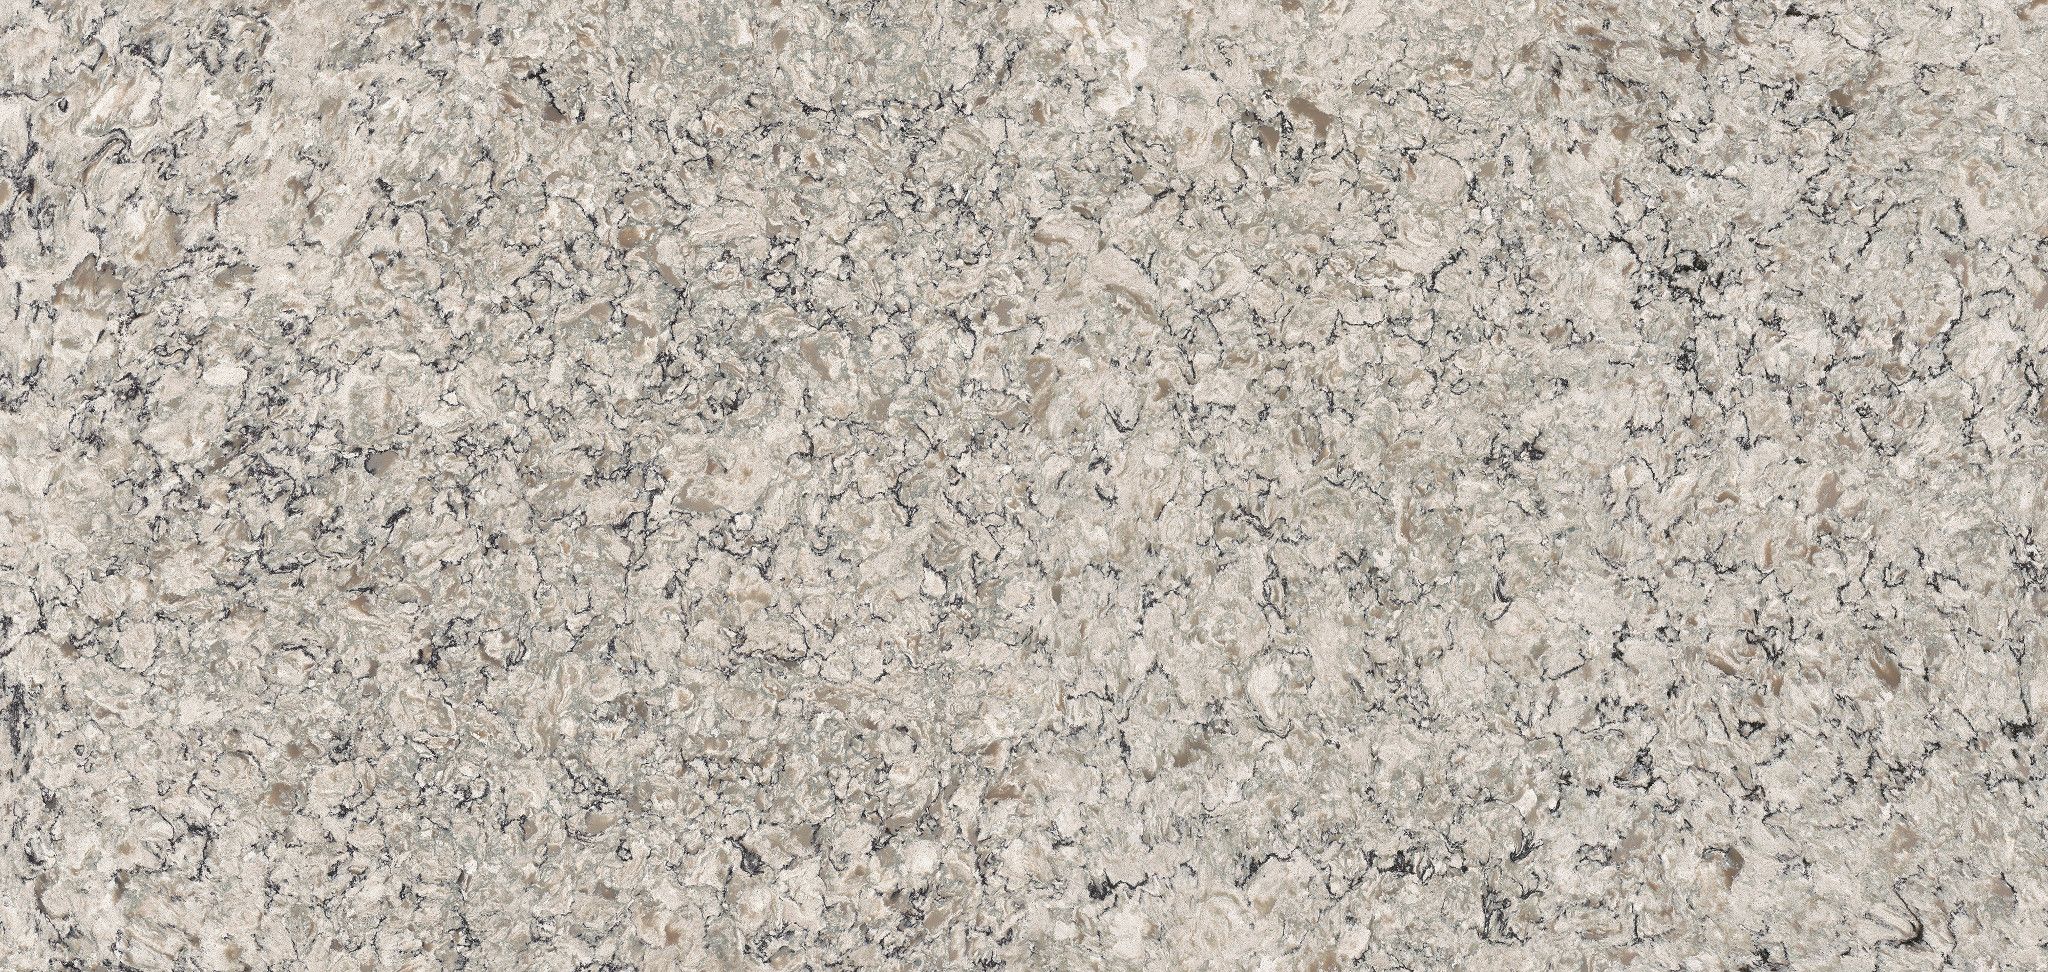 Praa Sands Worldwide Marble Granite